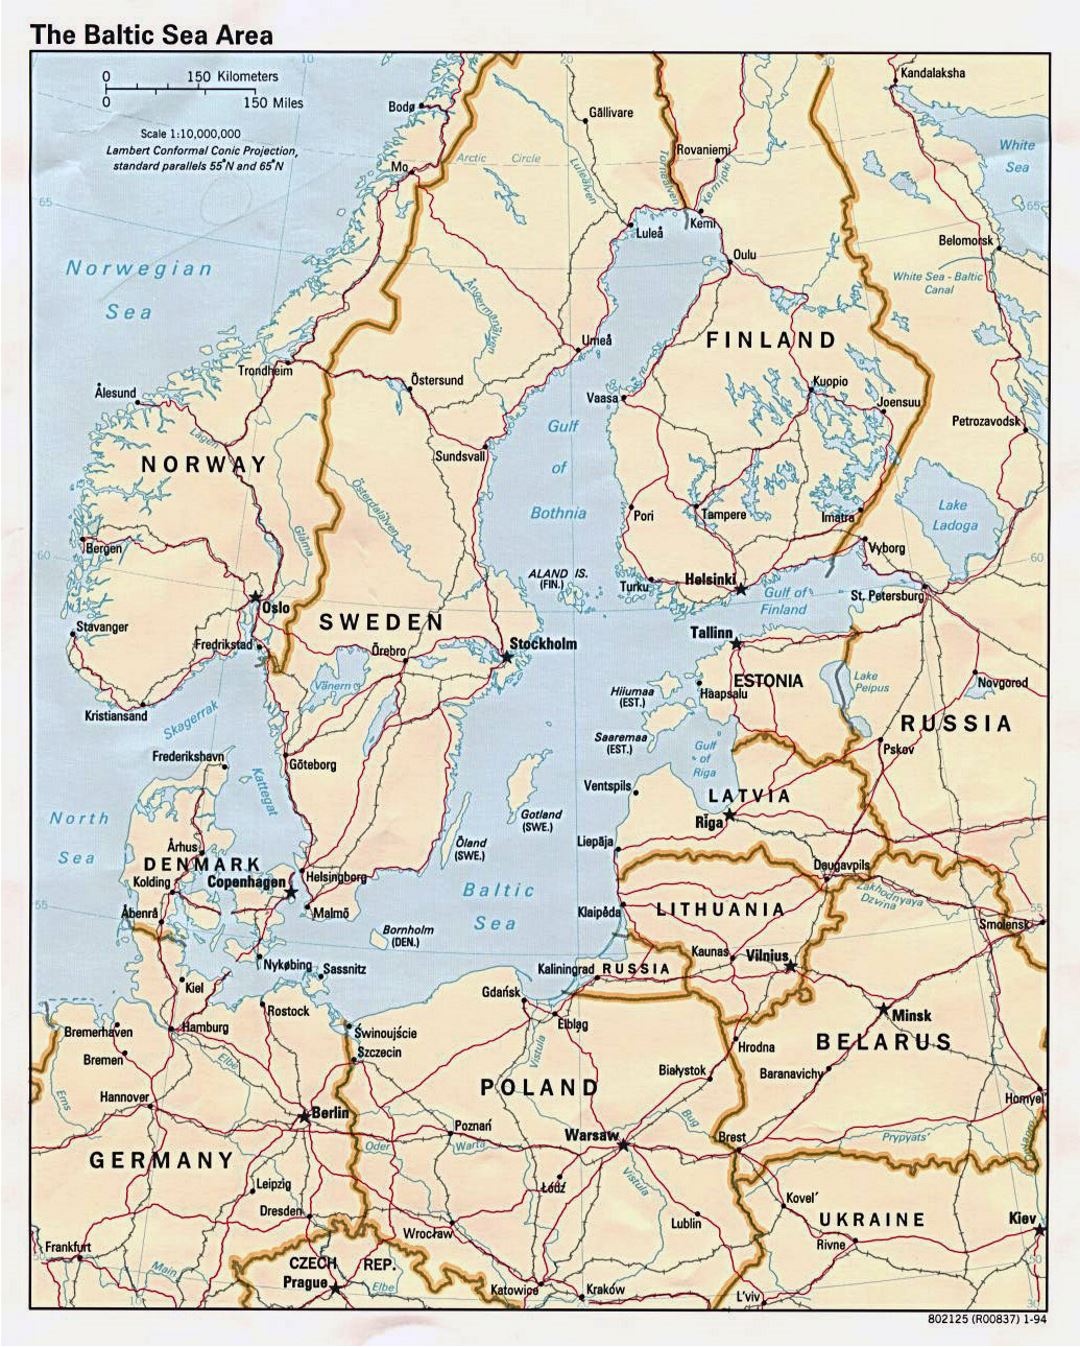 Mapa político grande de la zona del Mar Báltico - 1994